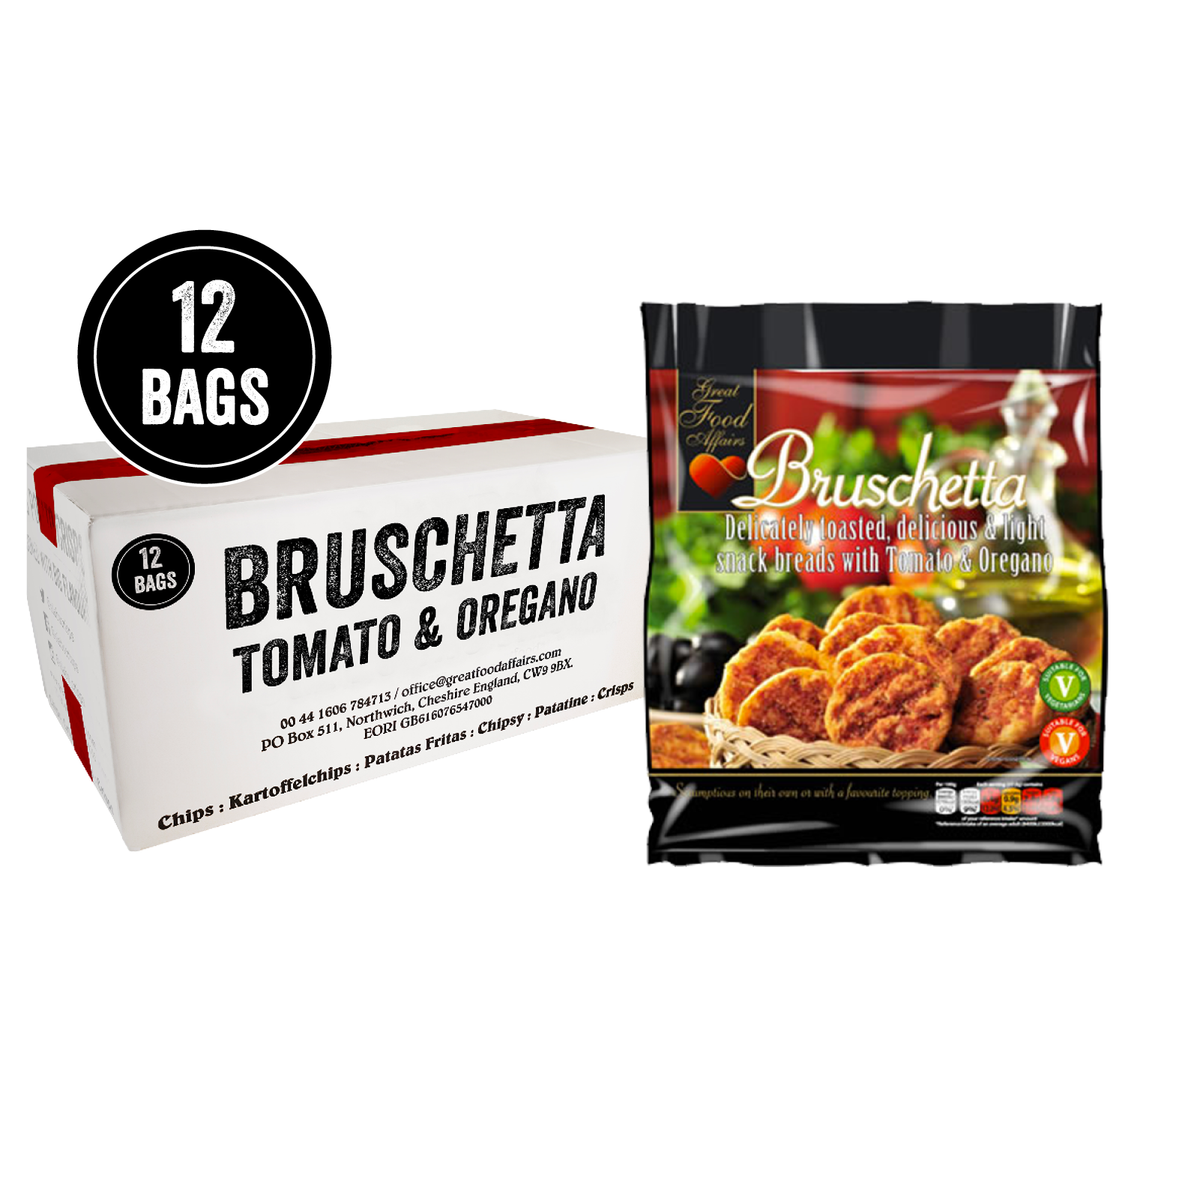 Bruschetta Tomato & Oregano bread 150g (5.3oz) big box of 12 bags